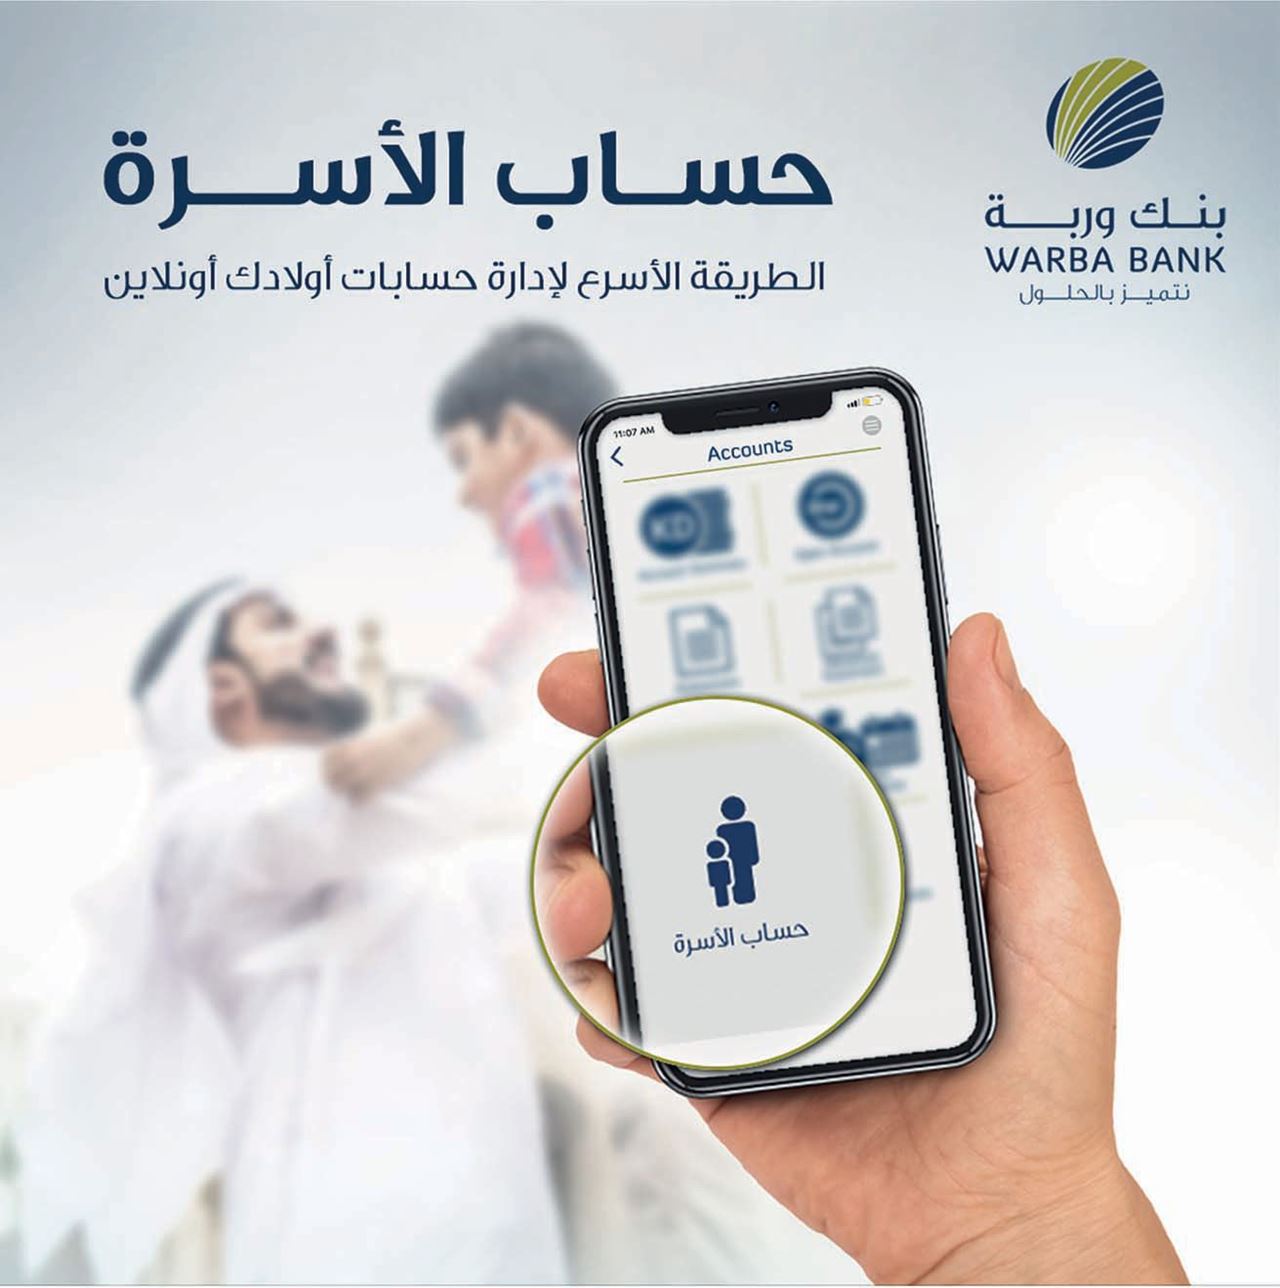 "حساب العائلة" الجديد، خدمة رقمية حصرية ينفرد "بنك وربة" بتقديمها في القطاع المصرفي